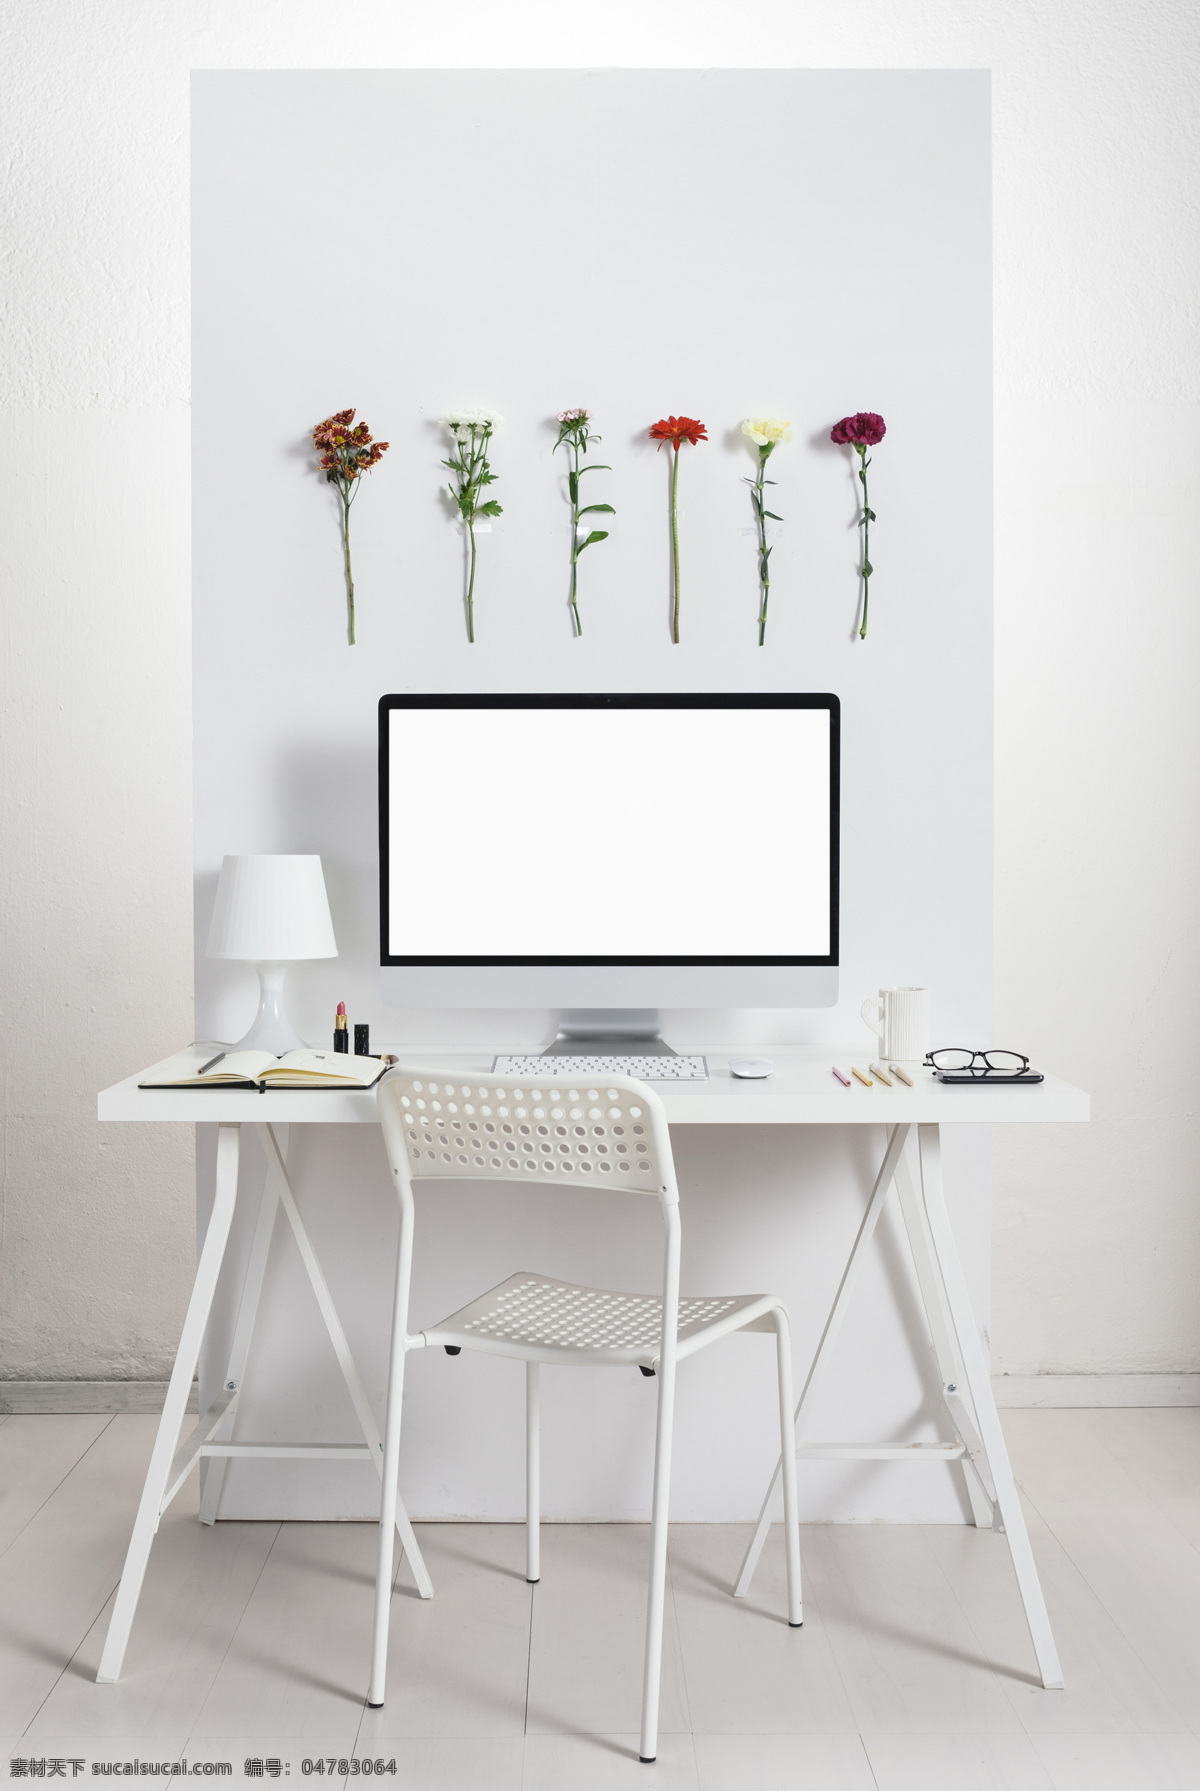 简单 办公 桌子 办公桌子 椅子 电脑 台灯 墙上的花朵 时尚简约 简洁风格 简约摄影 简约图片 其他类别 生活百科